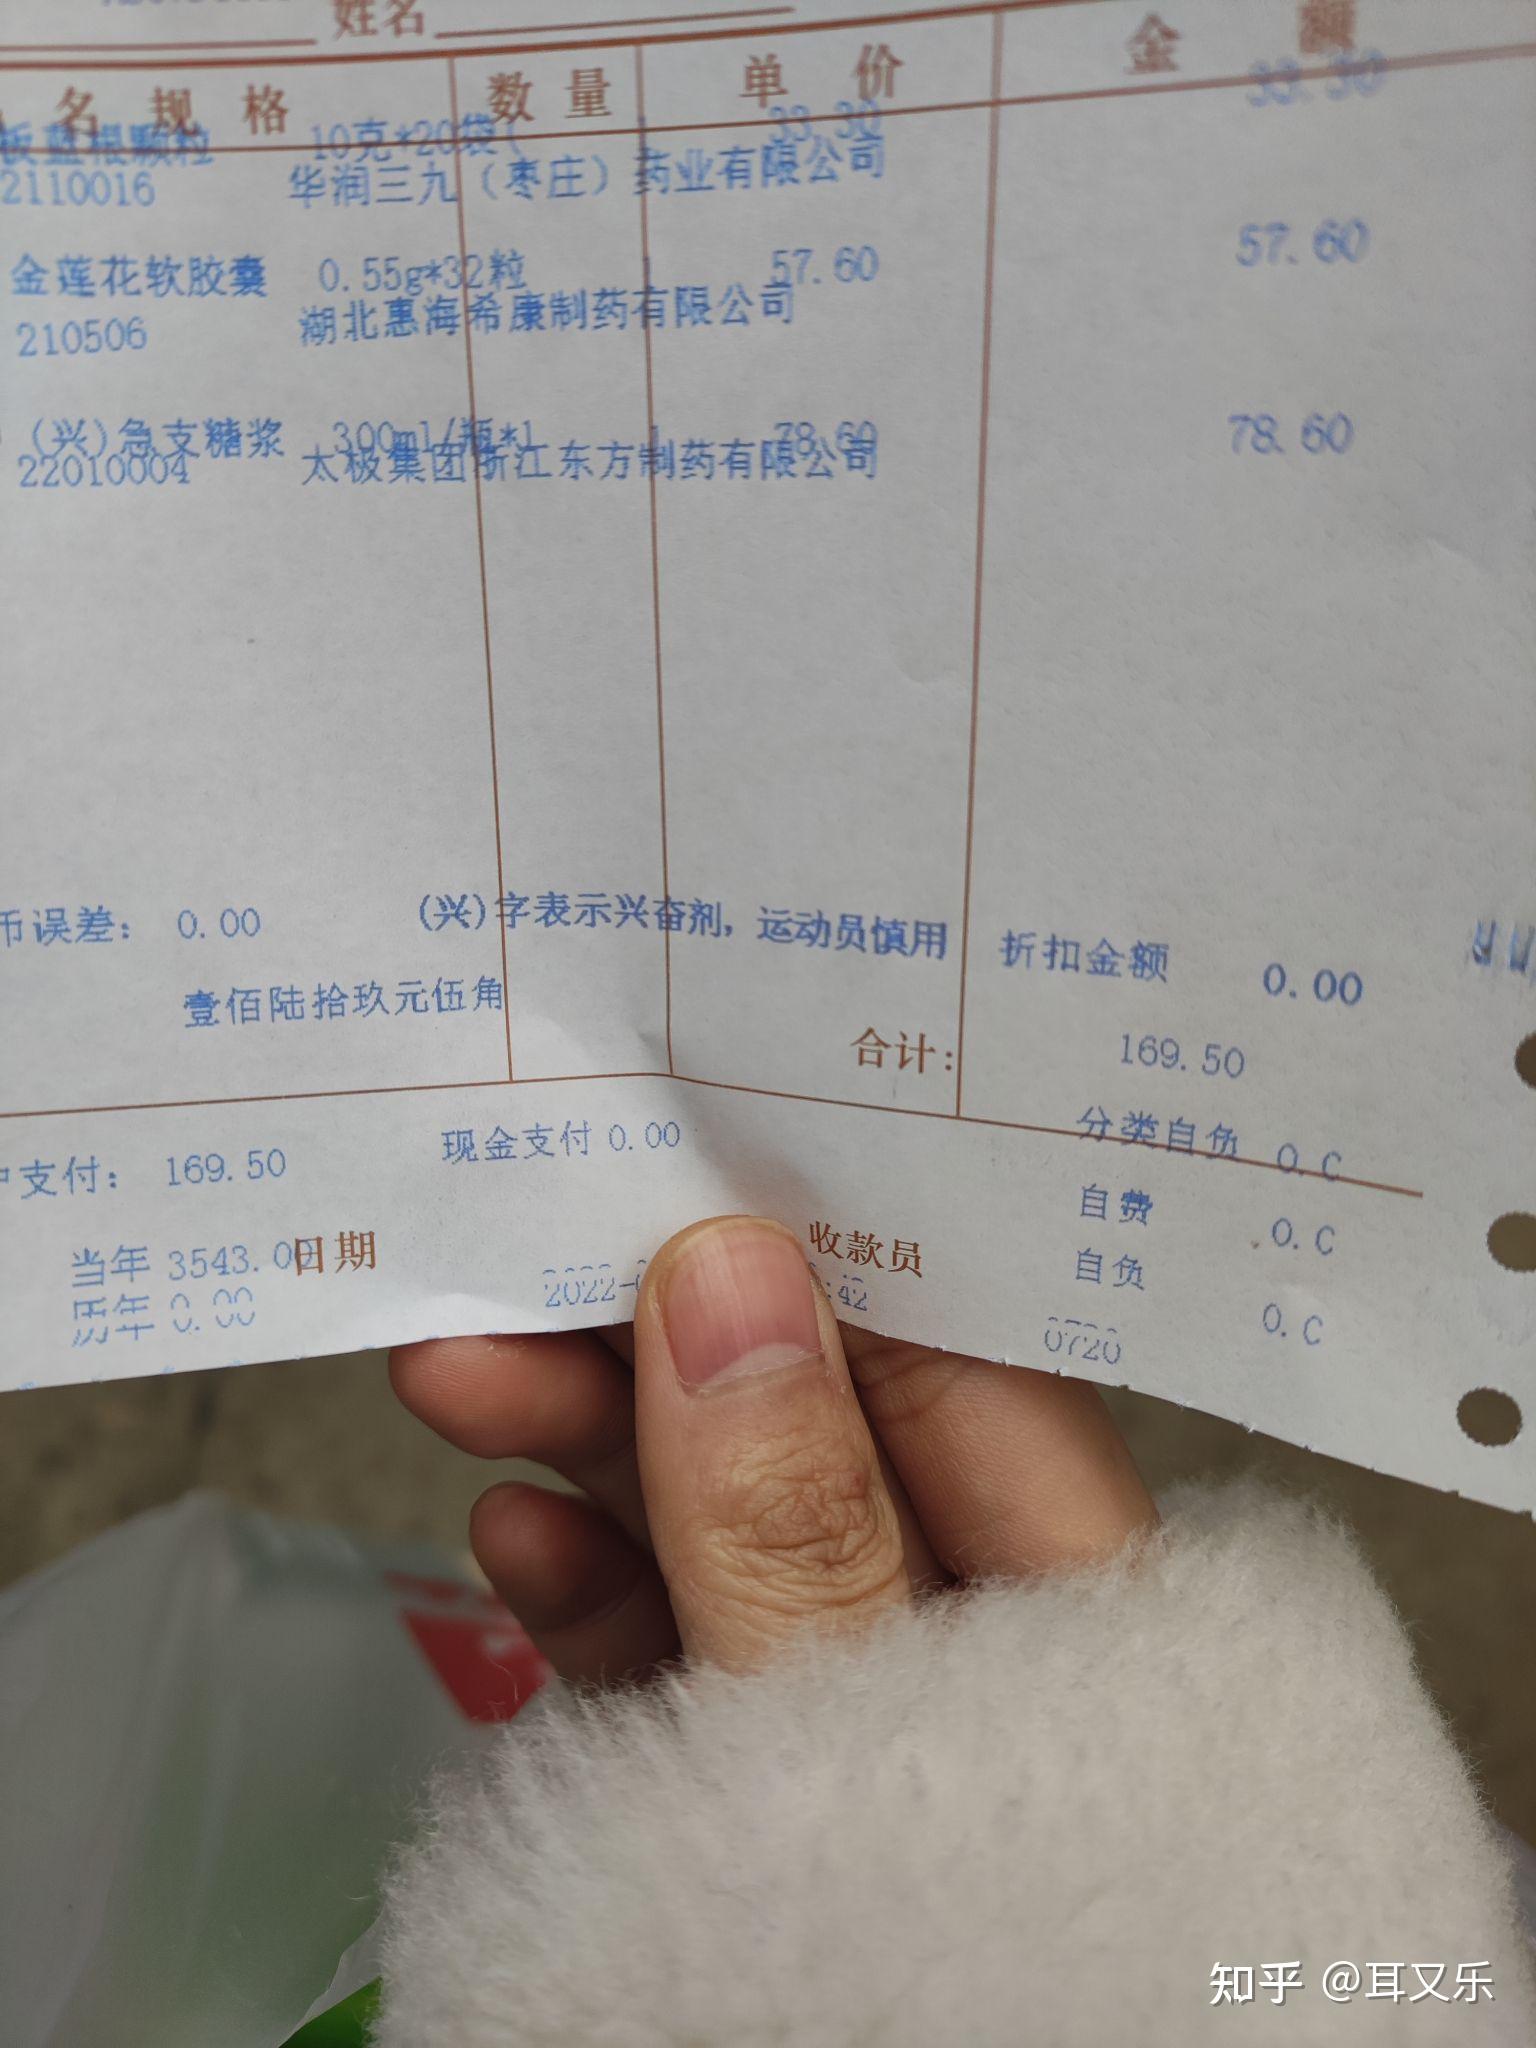 为什么上海的药店卖药都如此贵? 